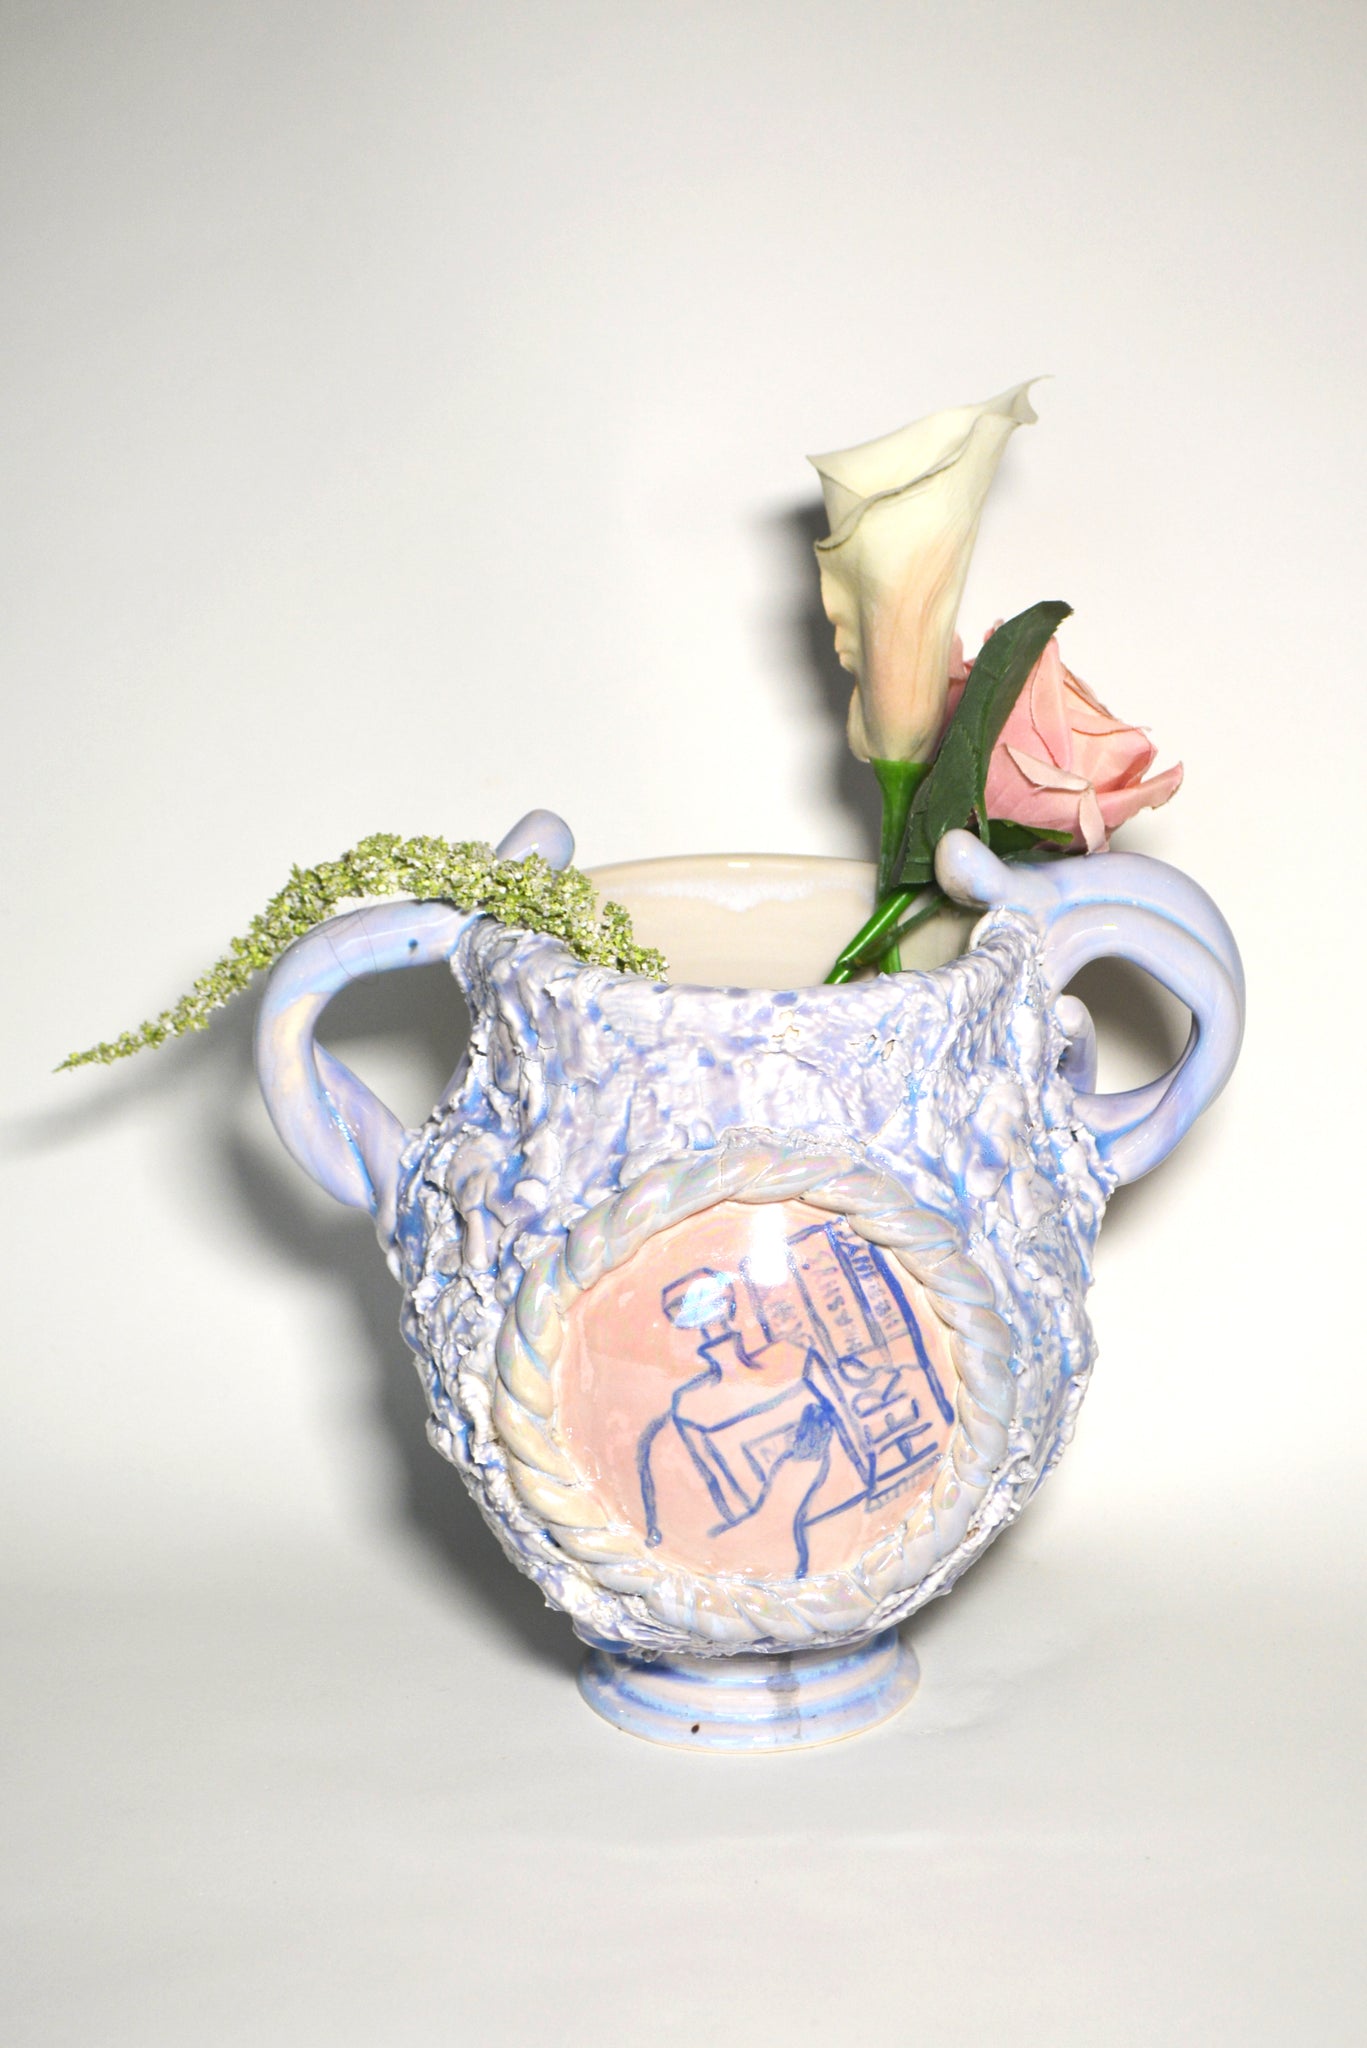 Jen Dwyer, "Treat Yourself (Vase)"